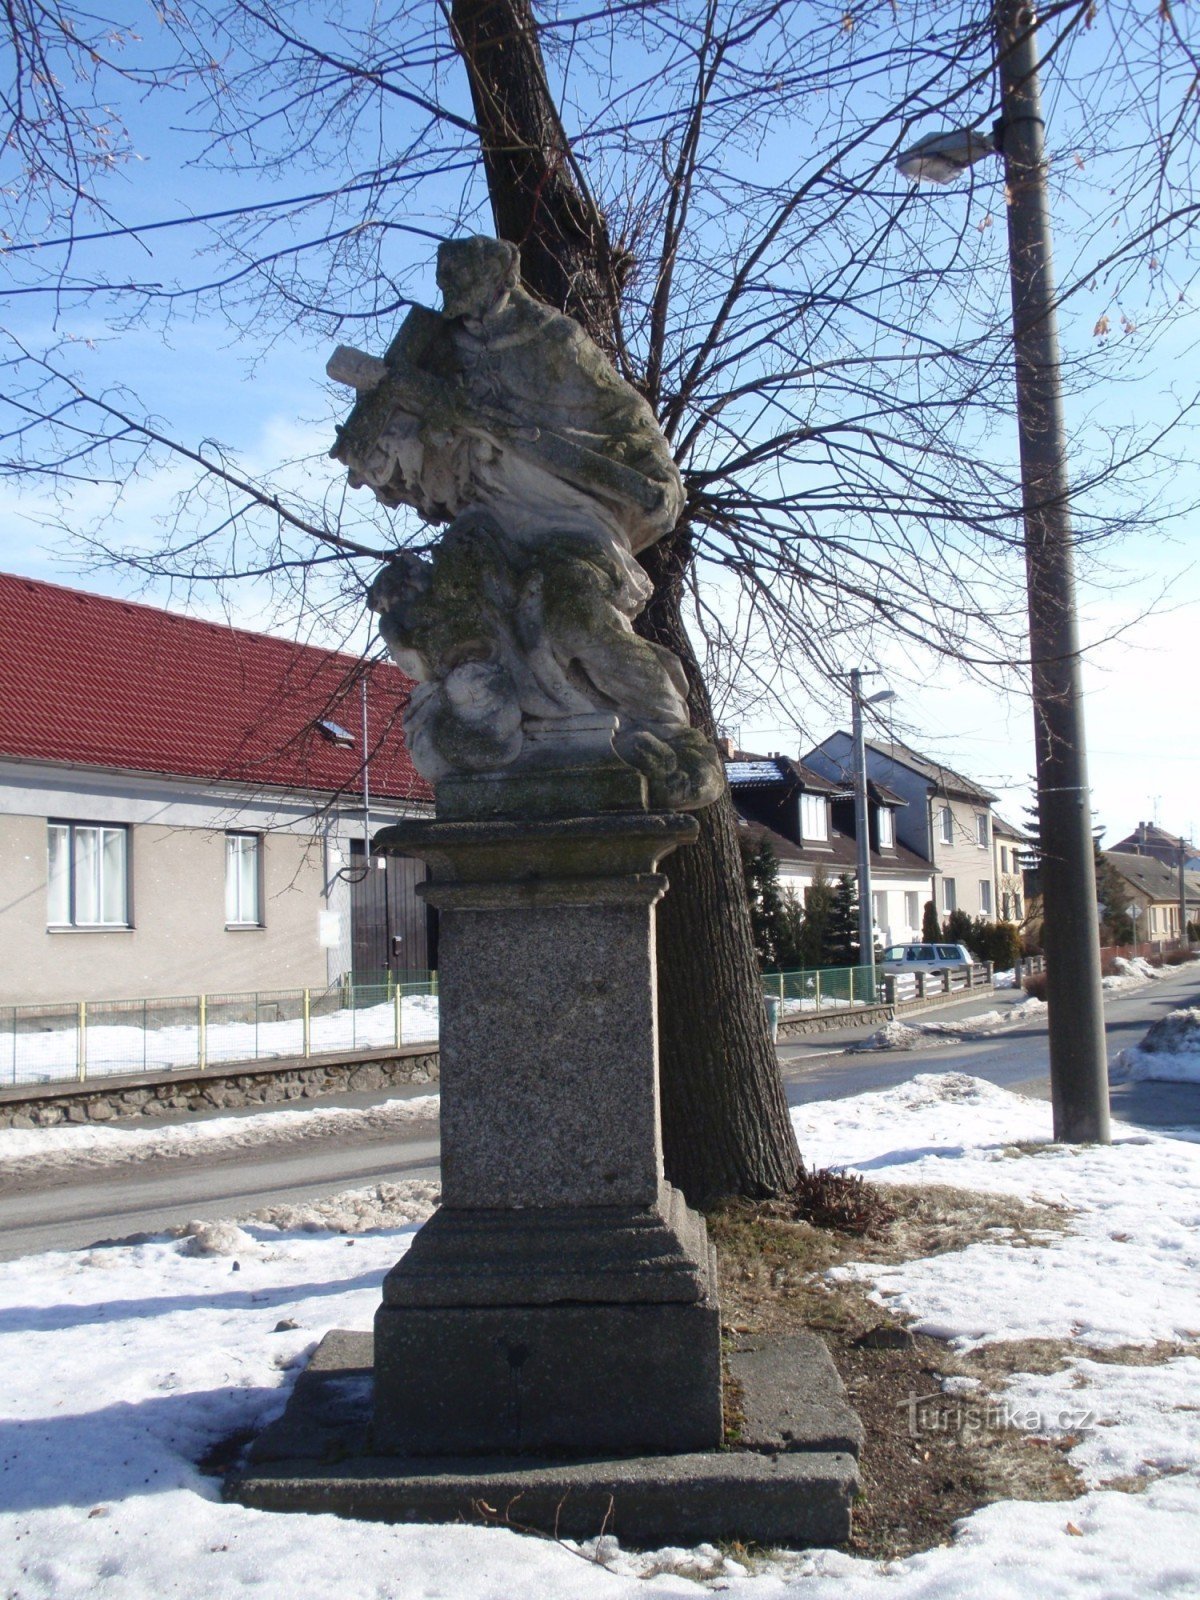 Strítež - statuia Sf. Jan Nepomucký